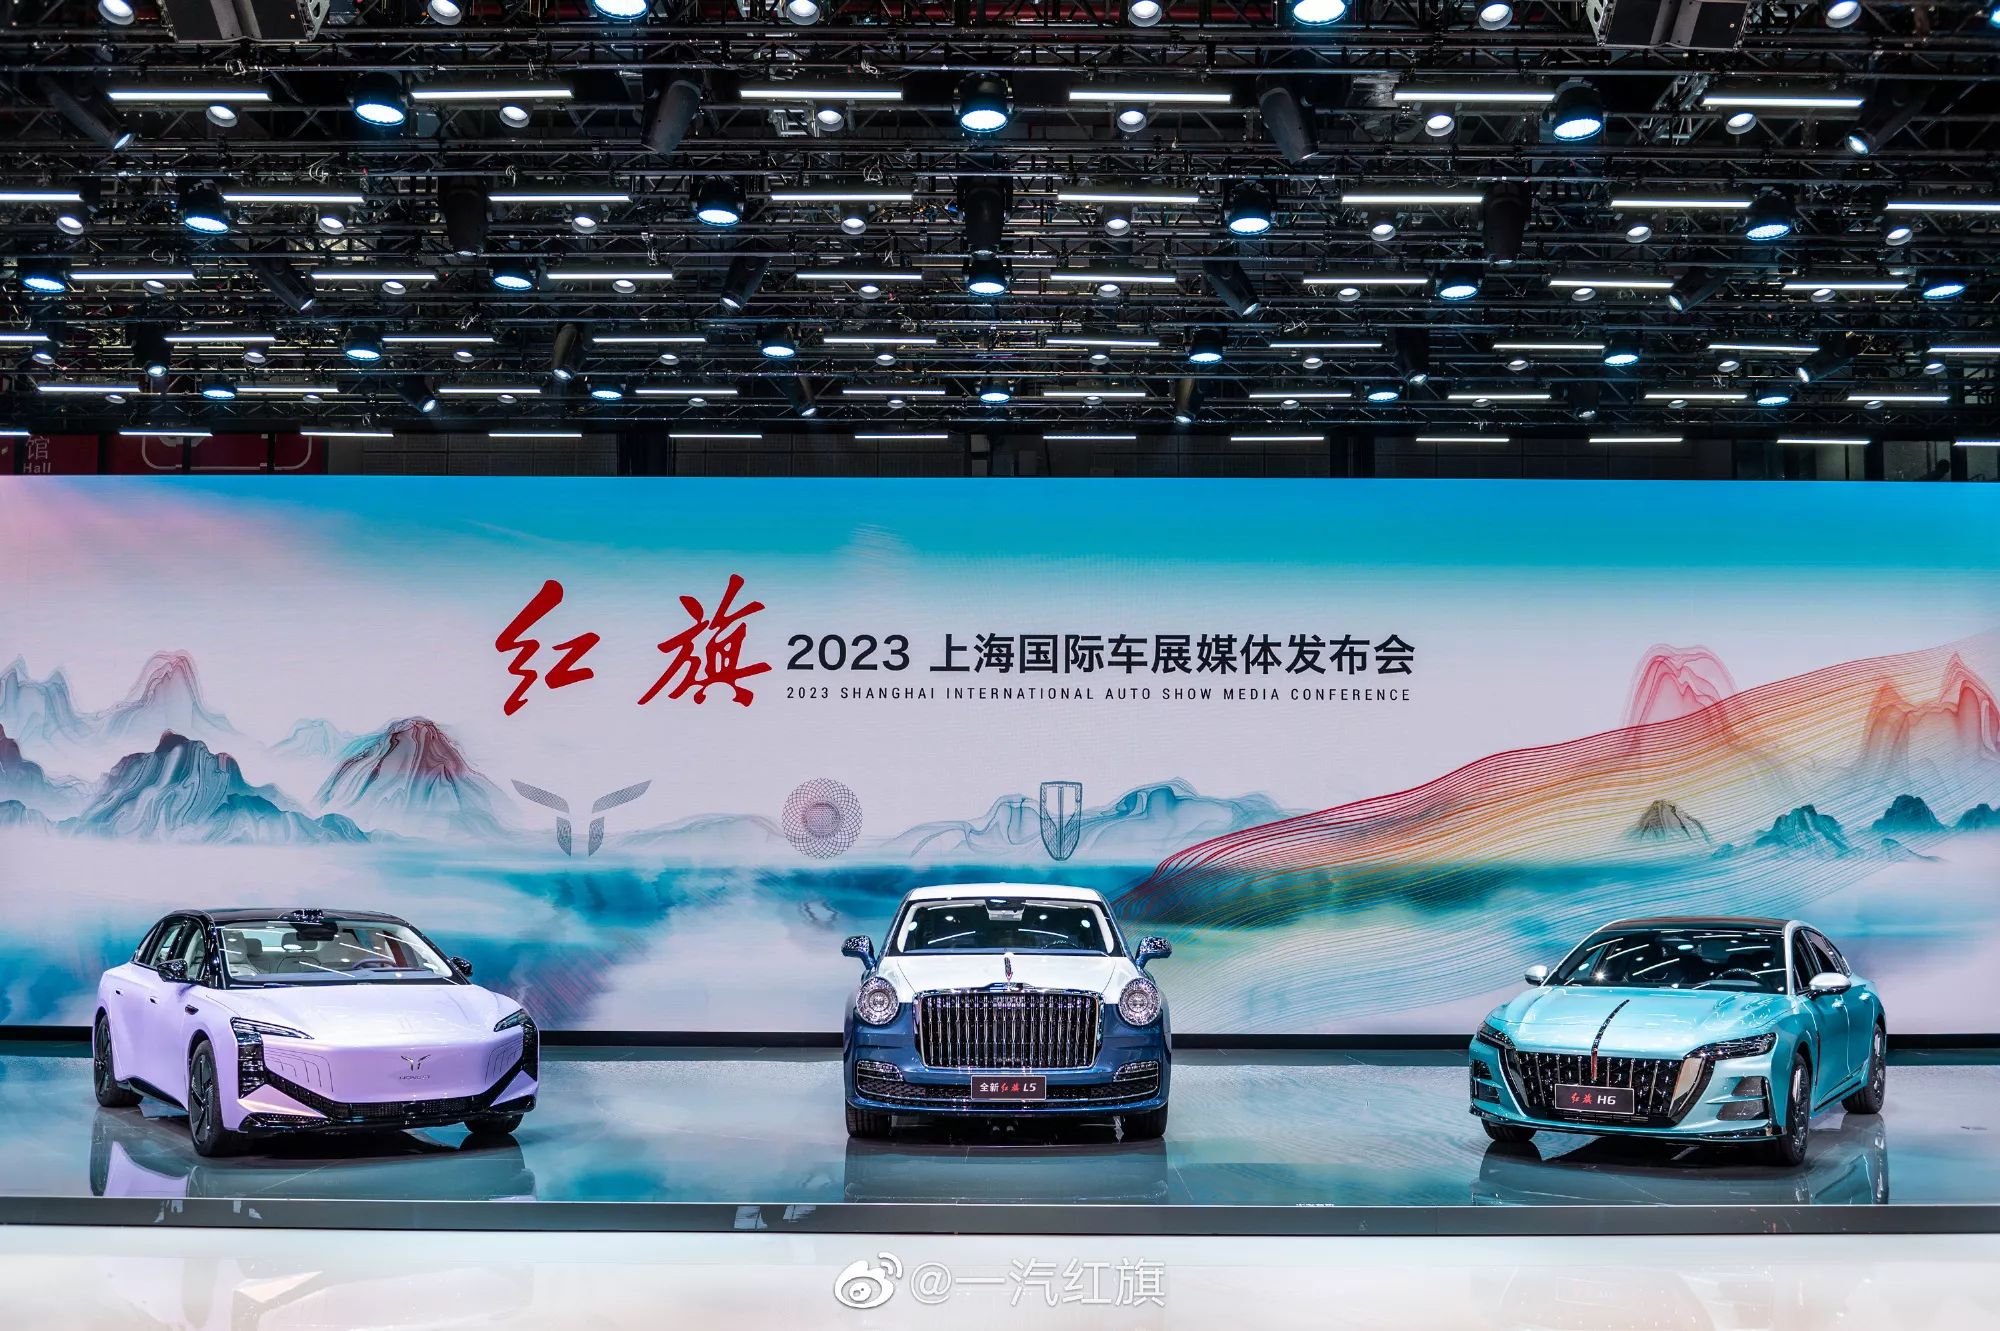 هونشي L5 الجديدة كلياً هي السيارة الصينية الأفخم والأغلى سعراً في التاريخ 5